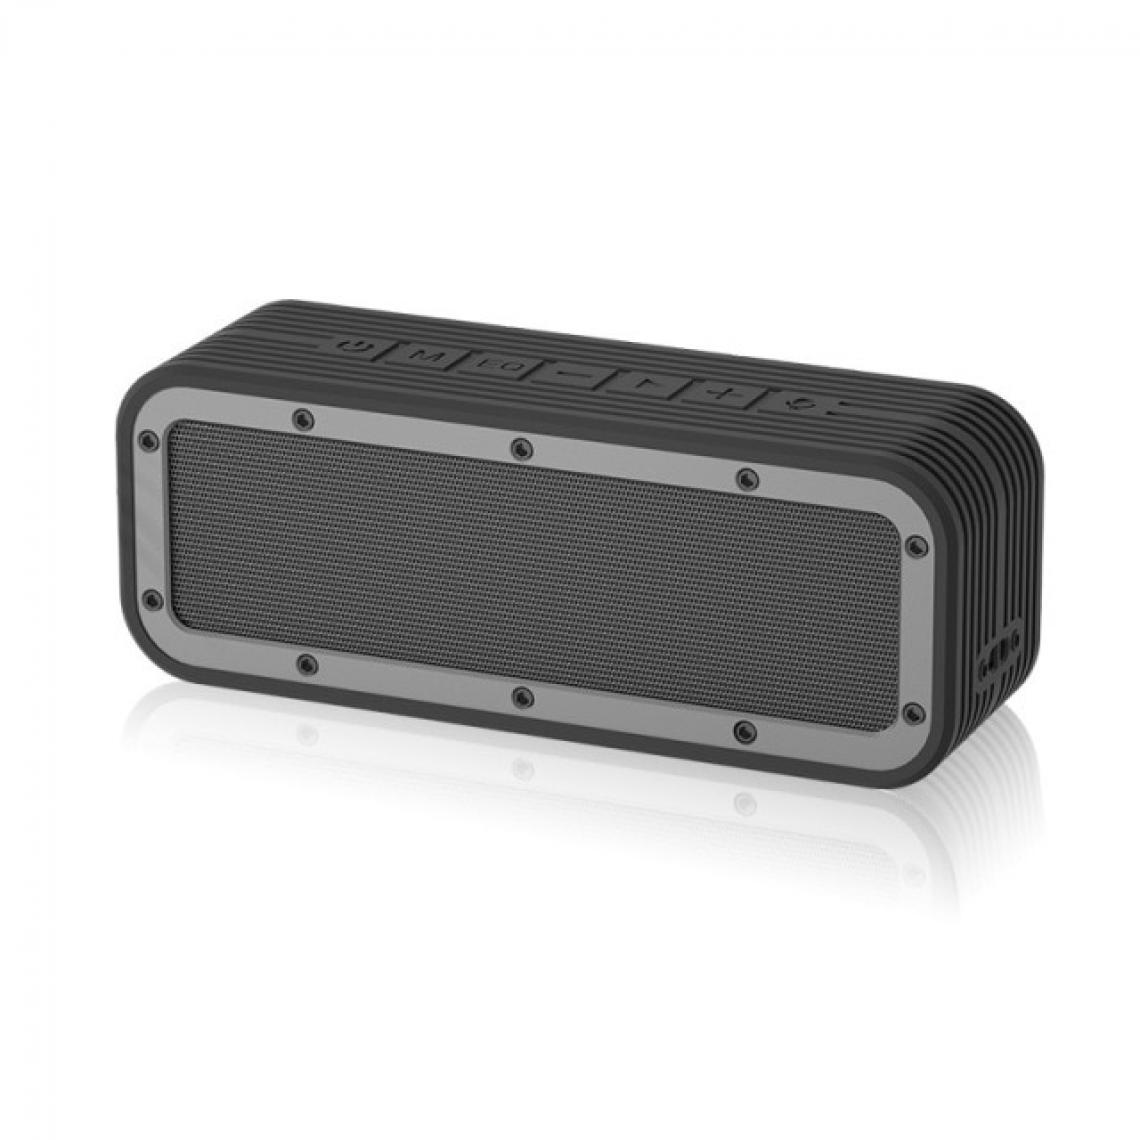 Universal - Haut-parleur portable noir IPX7 Haut-parleur Bluetooth sans fil étanche Puissant Boîte à bras haut Subwoofer auxiliaire extérieur Haut-Parleur stéréo(Le noir) - Hauts-parleurs